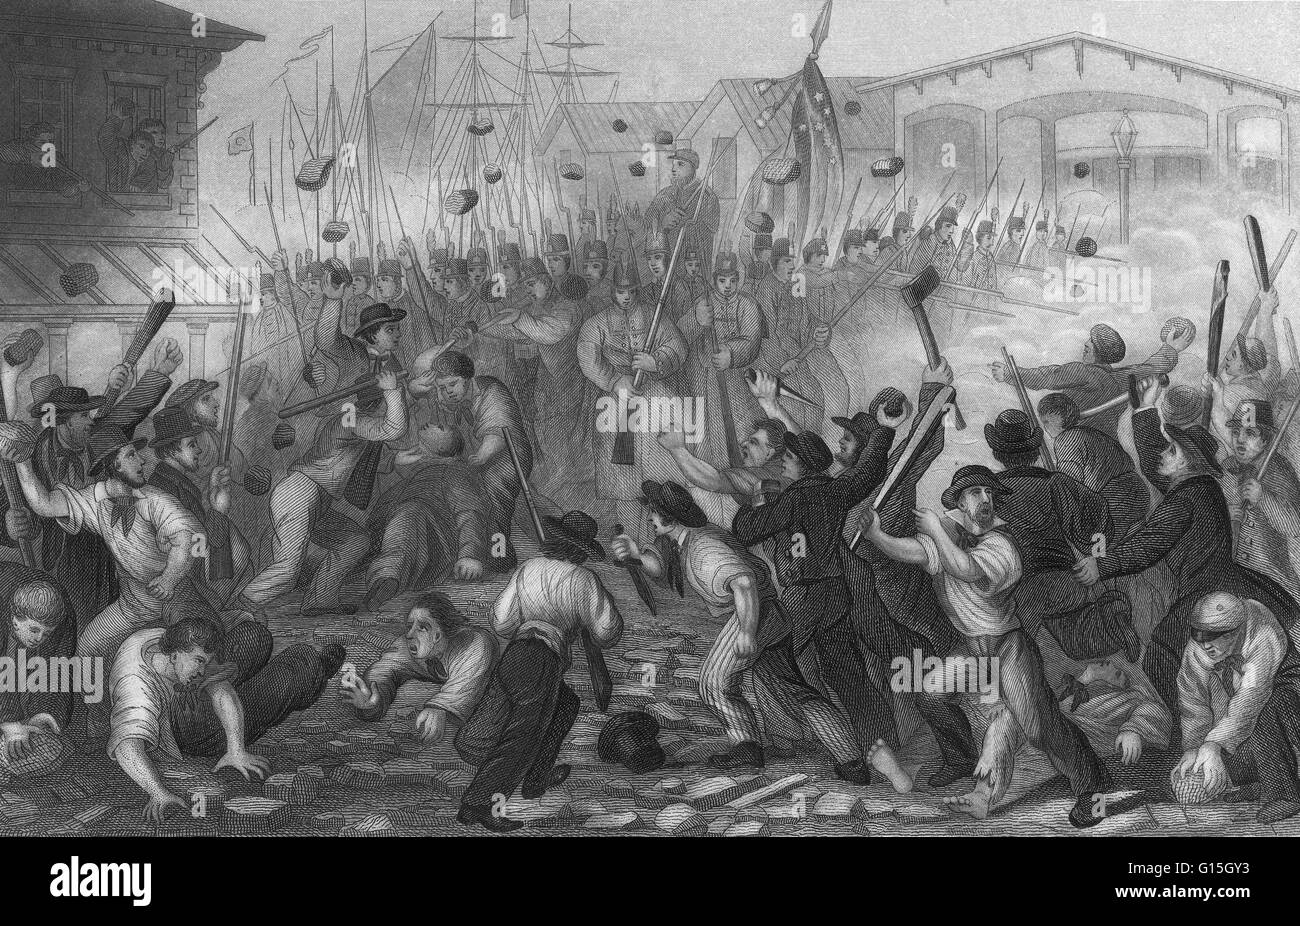 Le droit d'impression : attaque sur le Massachusetts 6ème à Baltimore, le 19 avril 1861. L'émeute de 1861 Baltimore (aussi appelé le Pratt Street Riot et le Pratt Street Massacre) a eu lieu le 19 avril 1861, à Baltimore, au Maryland, sympathisant confédérés Banque D'Images